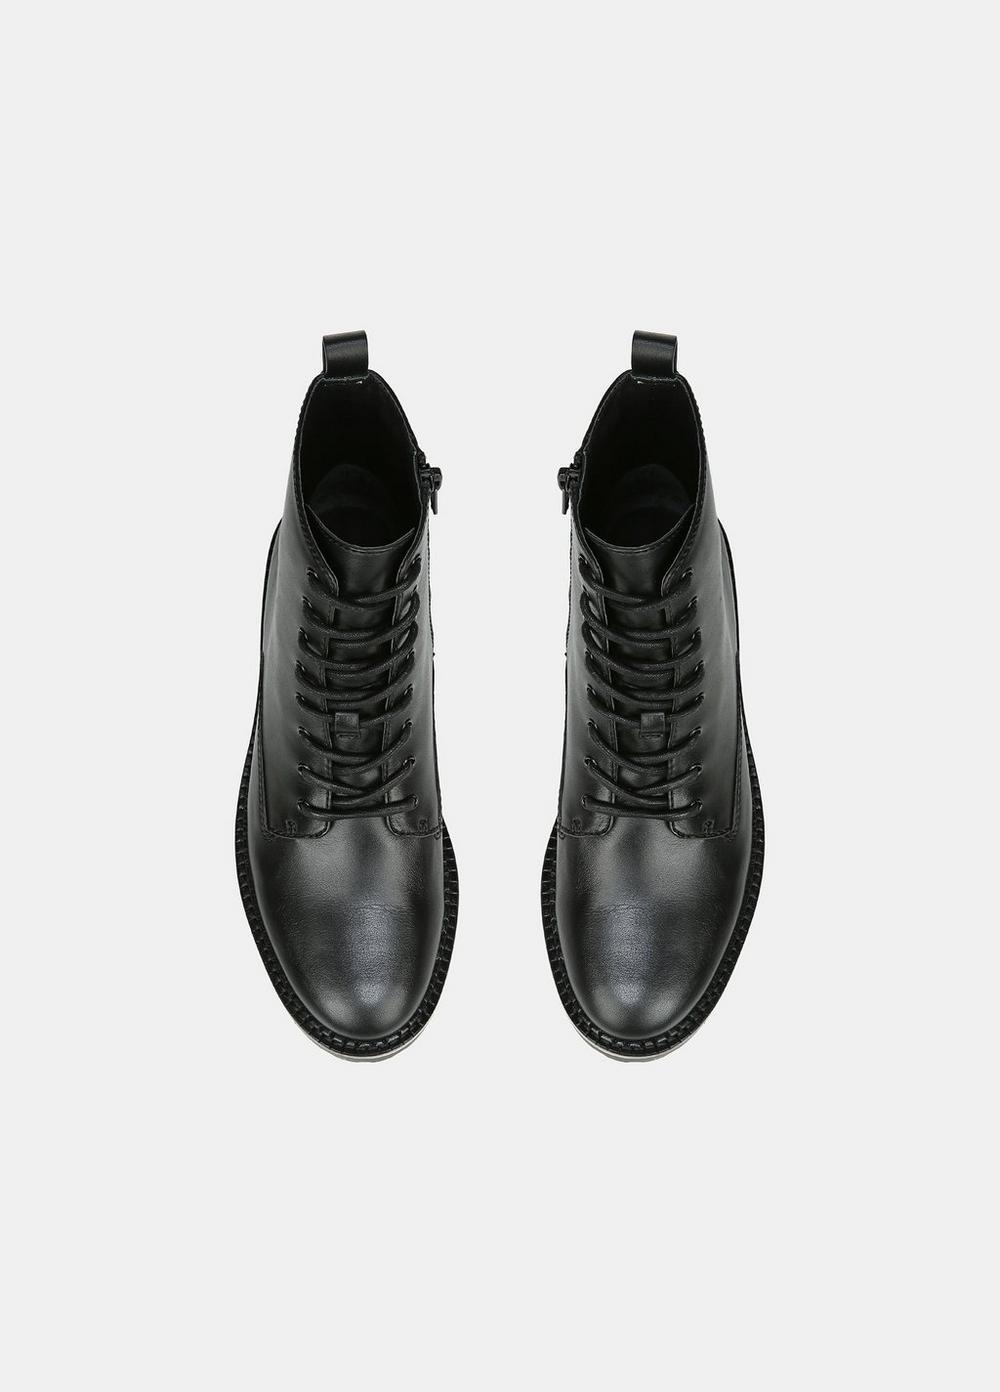 Cabria Leather Lug Boot